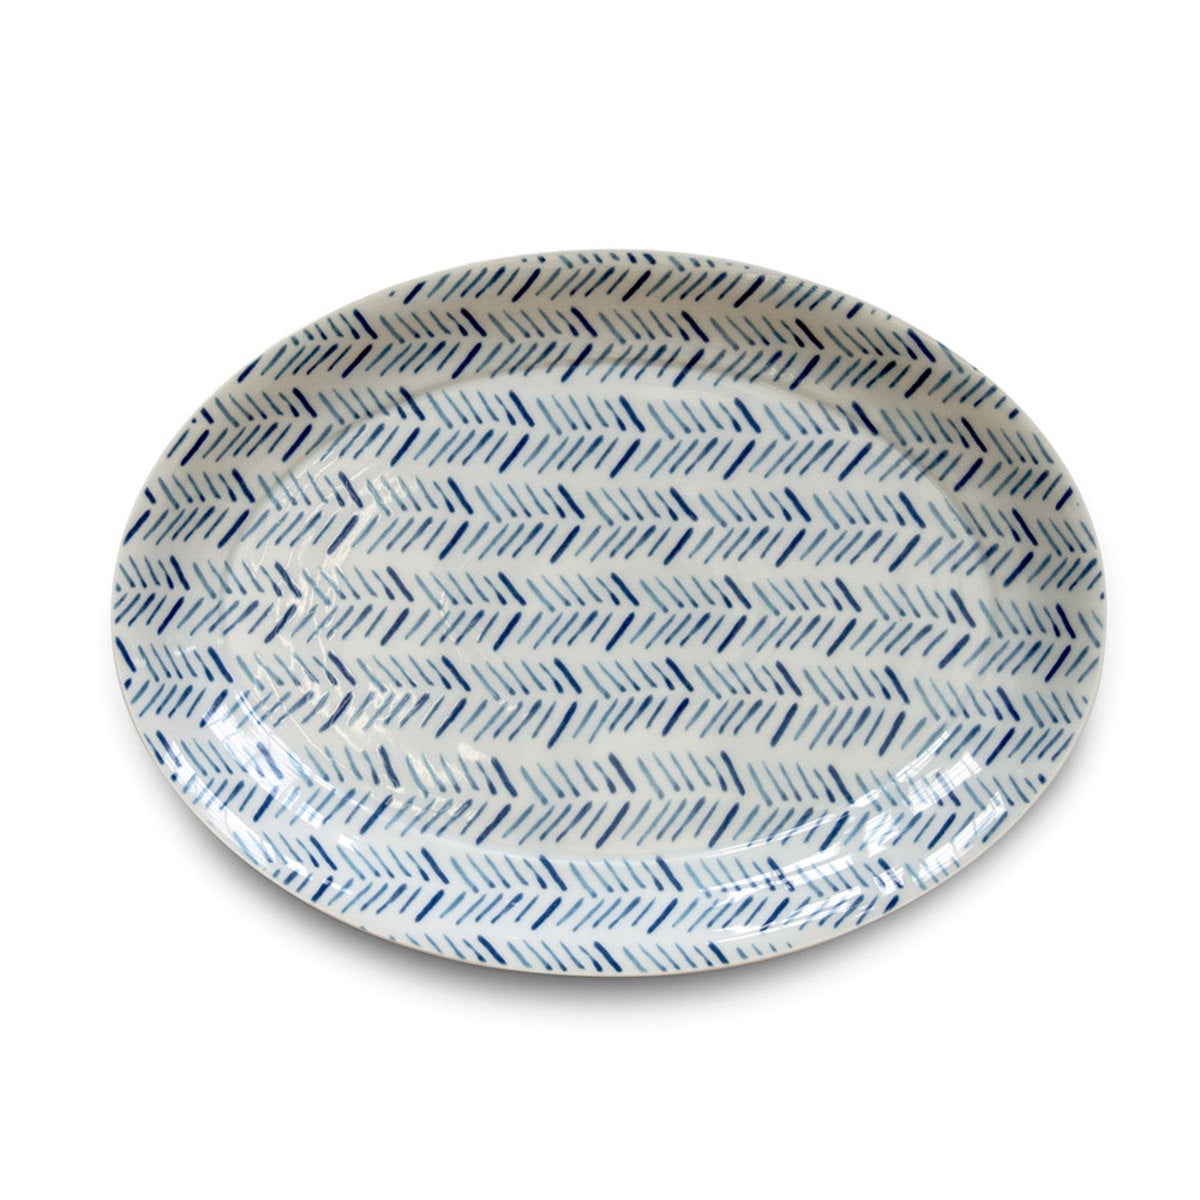 Marinha Porcelain Oval Serving Platter